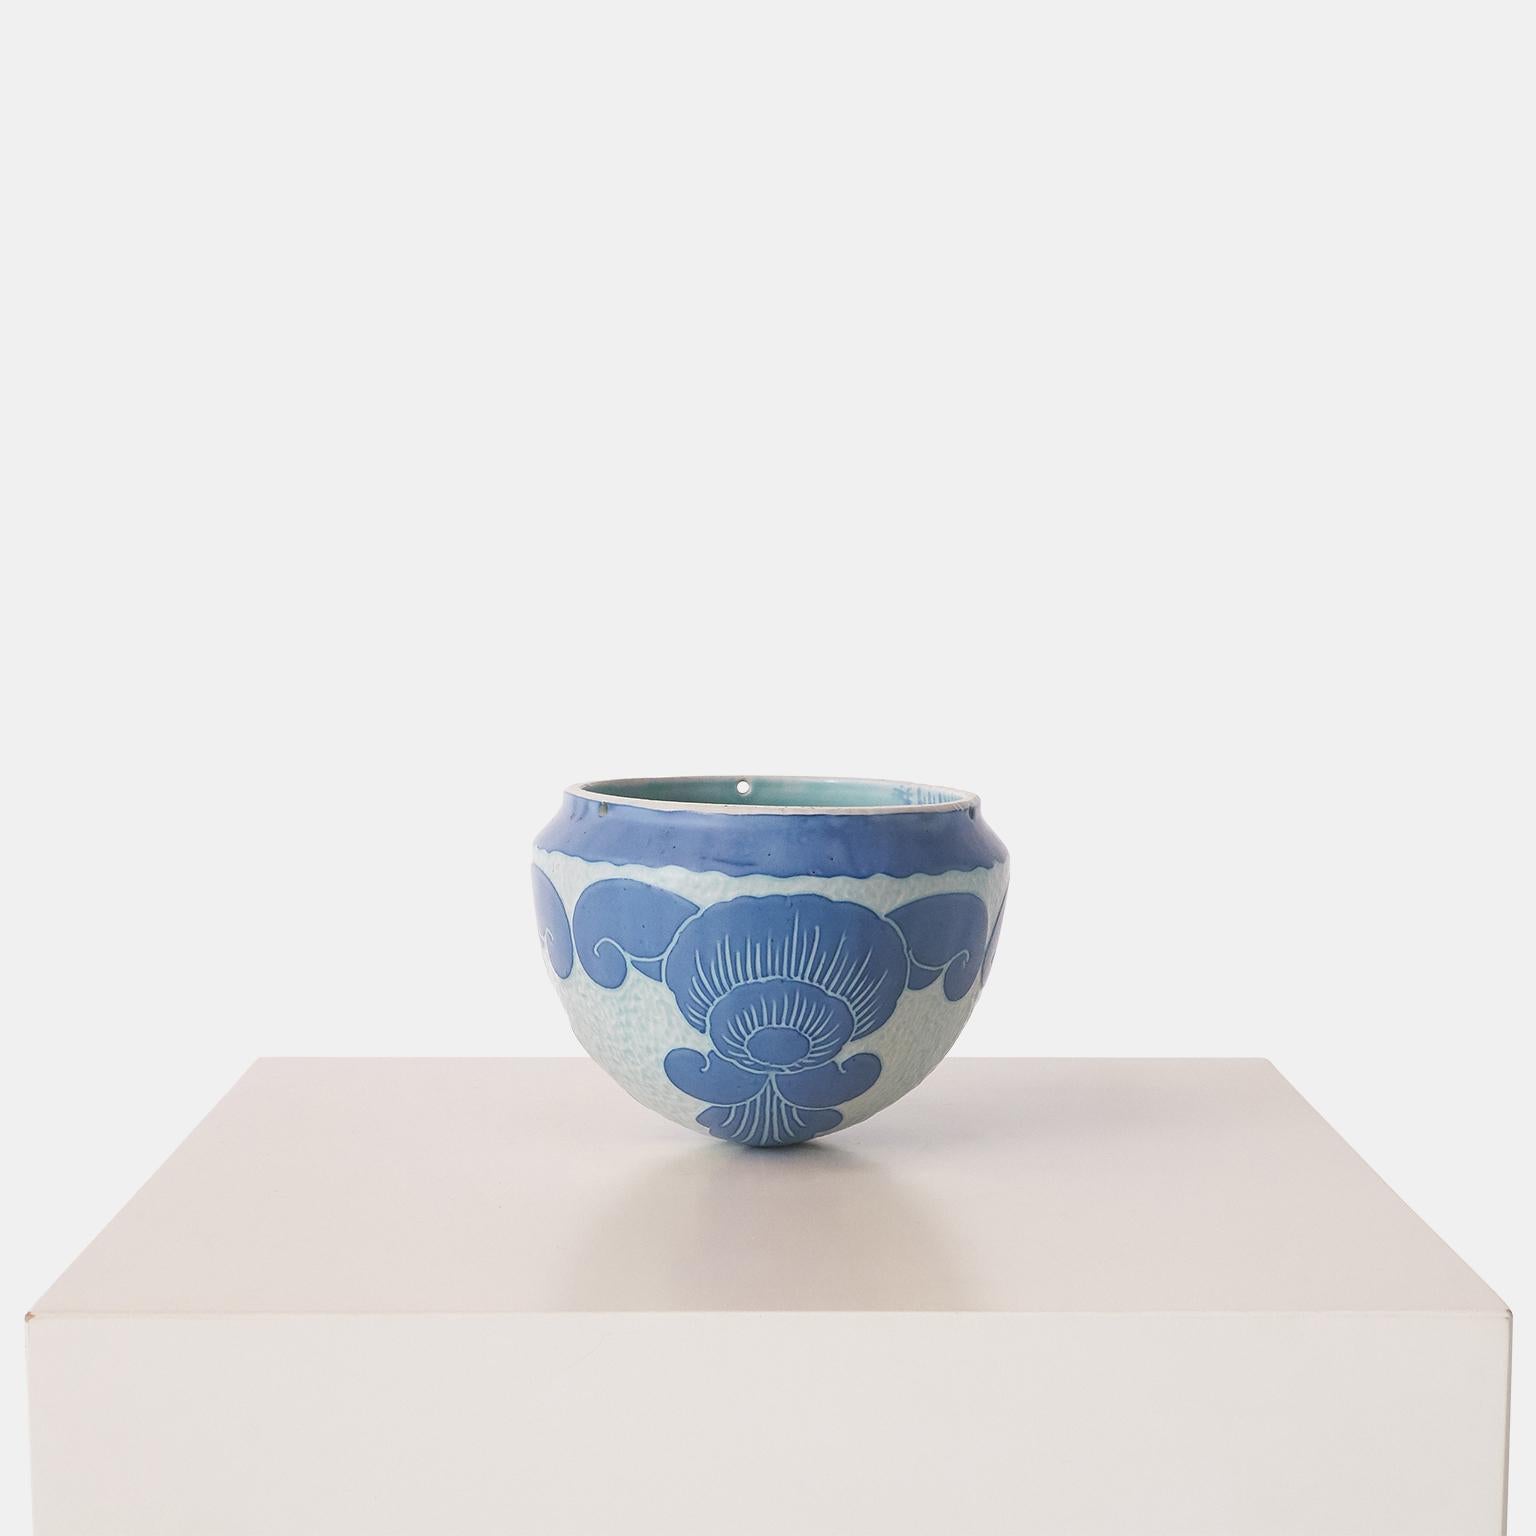 Vase bleu fait main par Josef Ekberg pour Gustavsberg. Chaque pièce est unique et décorée selon la technique du Sgrafitto, mise au point par Ekberg lui-même. Cette pièce comporte trois petits trous dans le bord supérieur et est conçue pour être